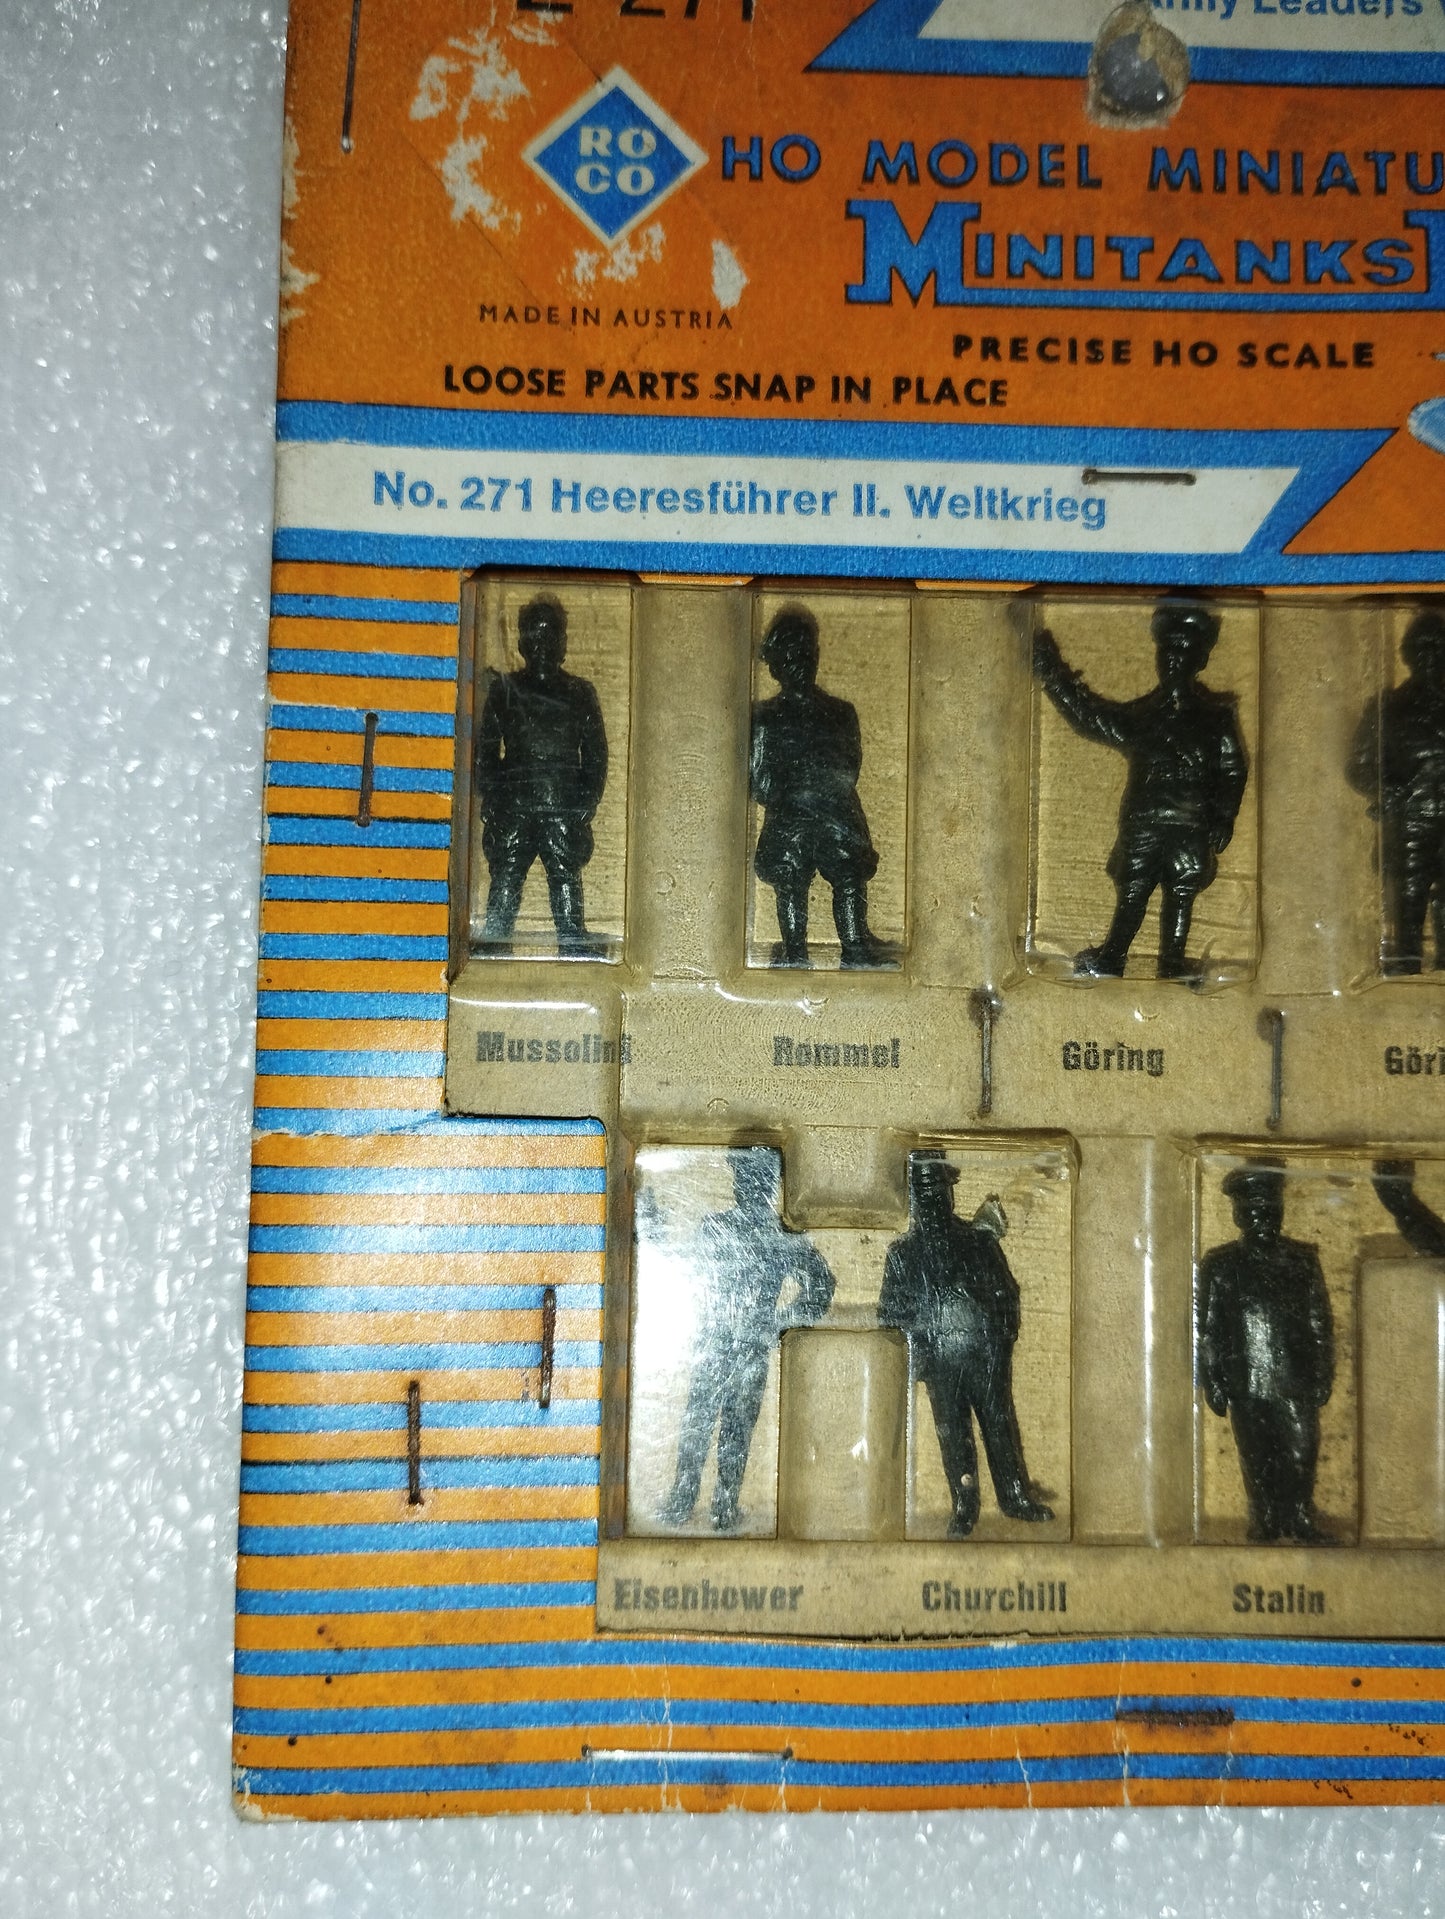 Model Miniatures Leaders Seconda Guerra mondiale

Prodotto da Roco cod.Z-271

Made in Austria